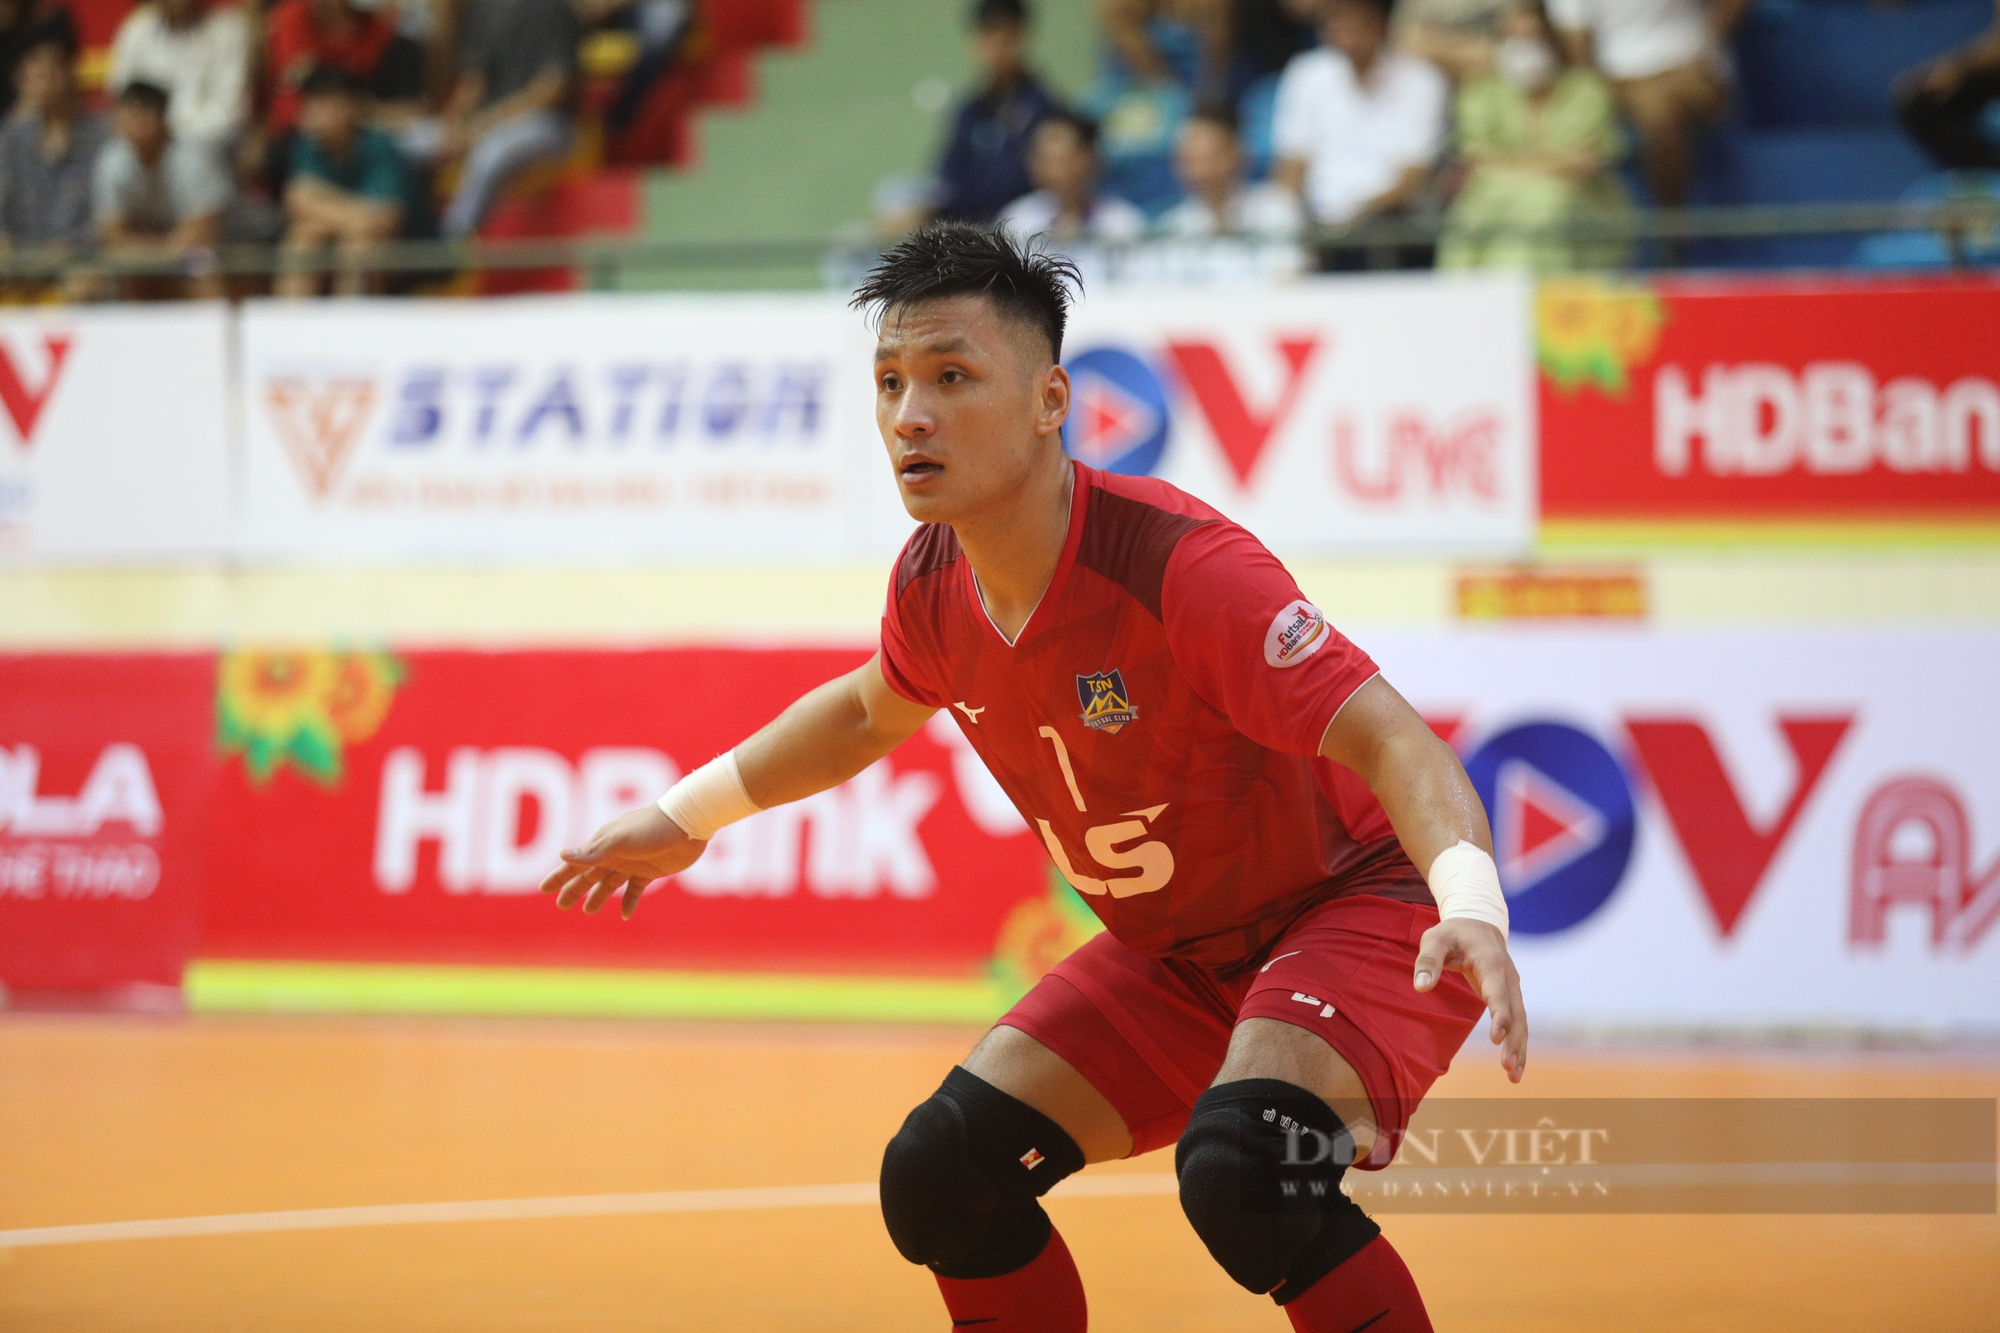 Thắng Sài Gòn FC, Thái Sơn Nam níu kéo cơ hội vô địch - Ảnh 6.